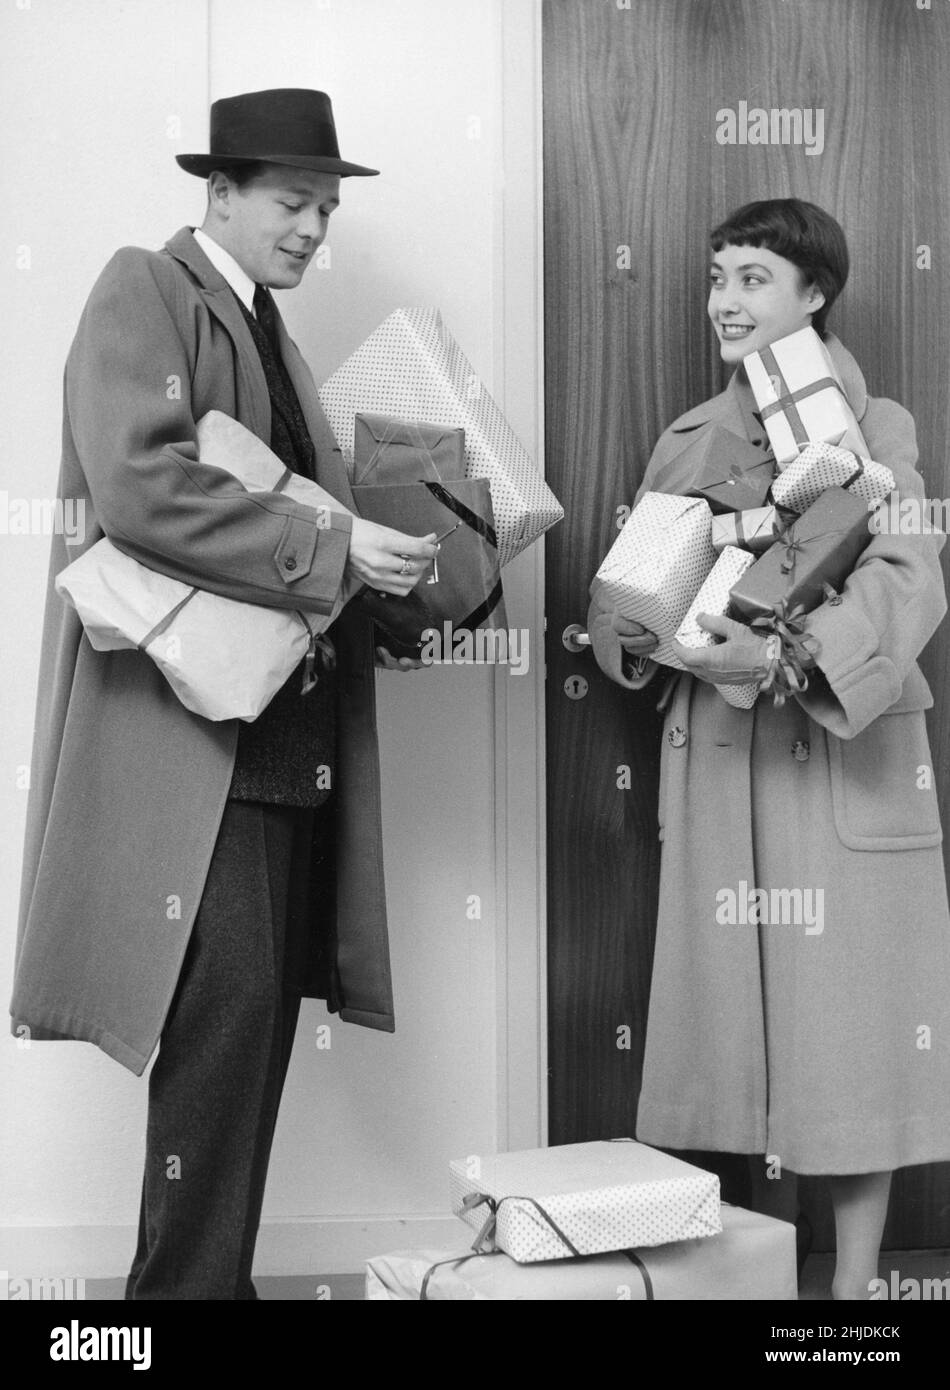 Weihnachten im Jahr 1950s. Ein Paar mit weihnachtsgeschenken nach einer Einkaufstour, das zu seinem Haus zurückkehrt und sich ein wenig mit dem Schlüssel zur Tür kämpft. 1953 Stockfoto